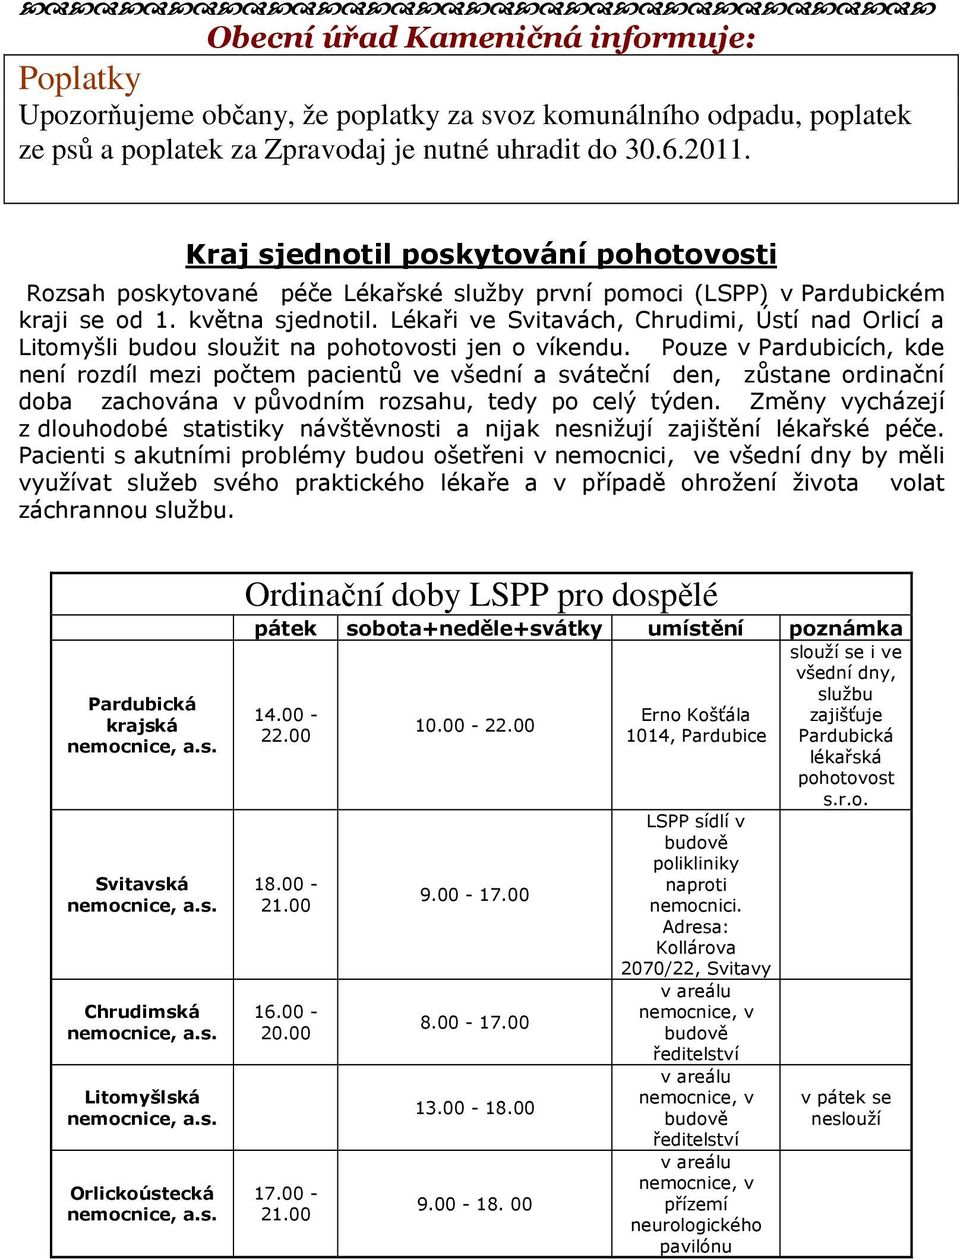 Lékaři ve Svitavách, Chrudimi, Ústí nad Orlicí a Litomyšli budou sloužit na pohotovosti jen o víkendu.